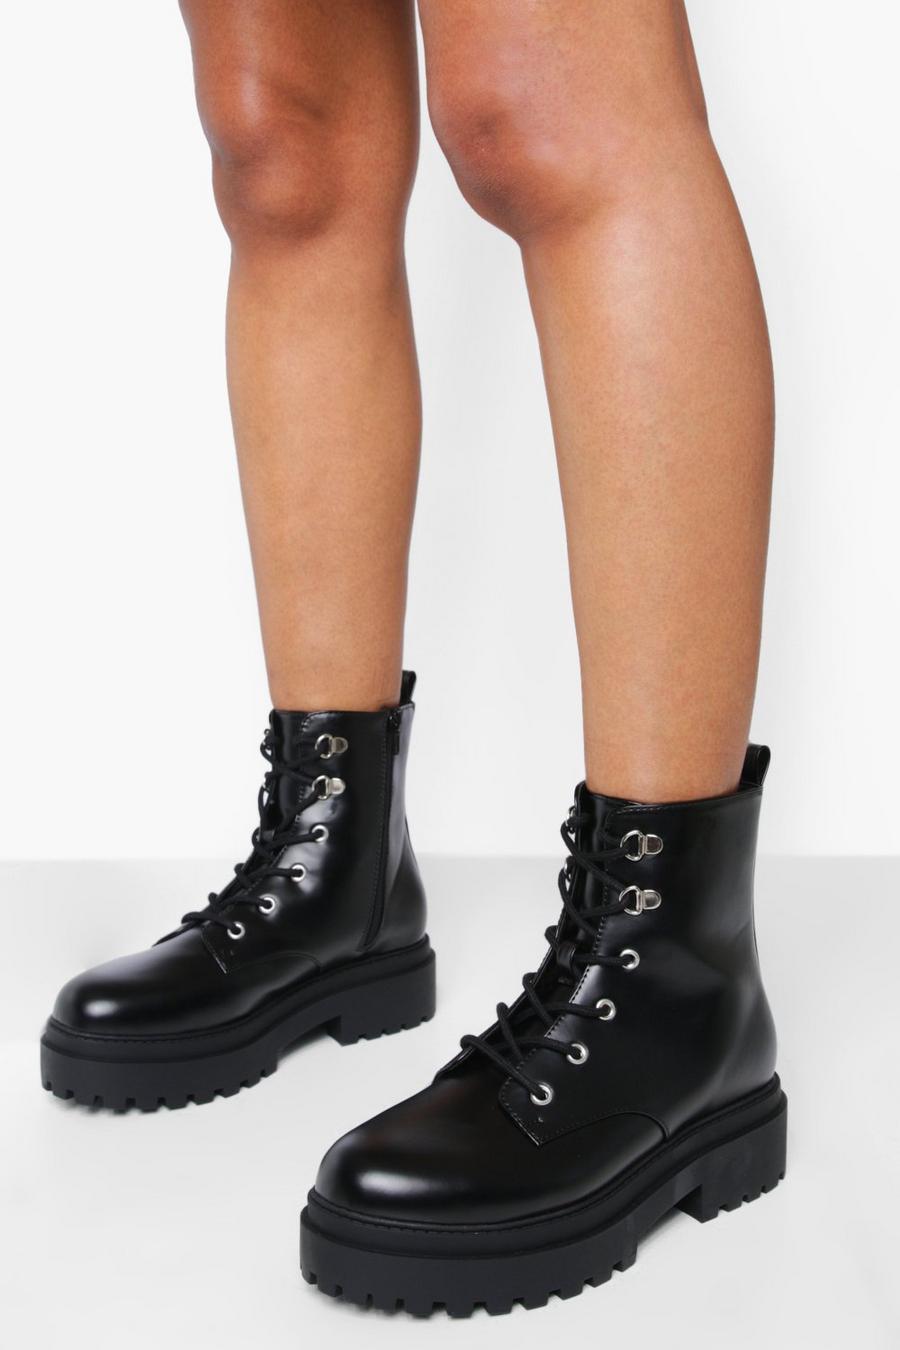 Chaussures de randonnée à œillets contrastants, Black noir